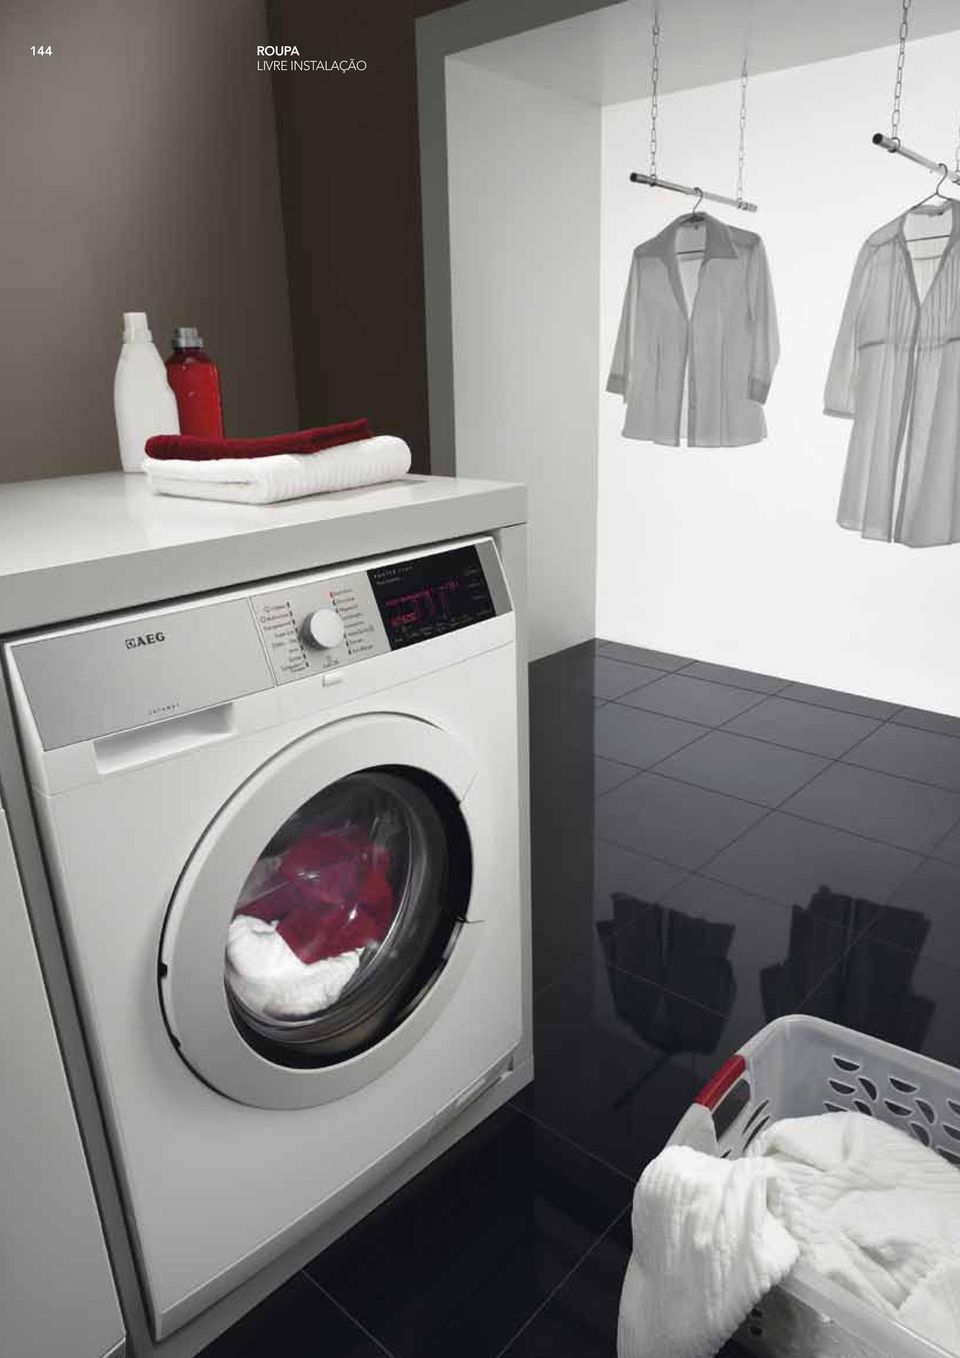 132 roupa máquinas de lavar roupa e secadores - PDF Download grátis